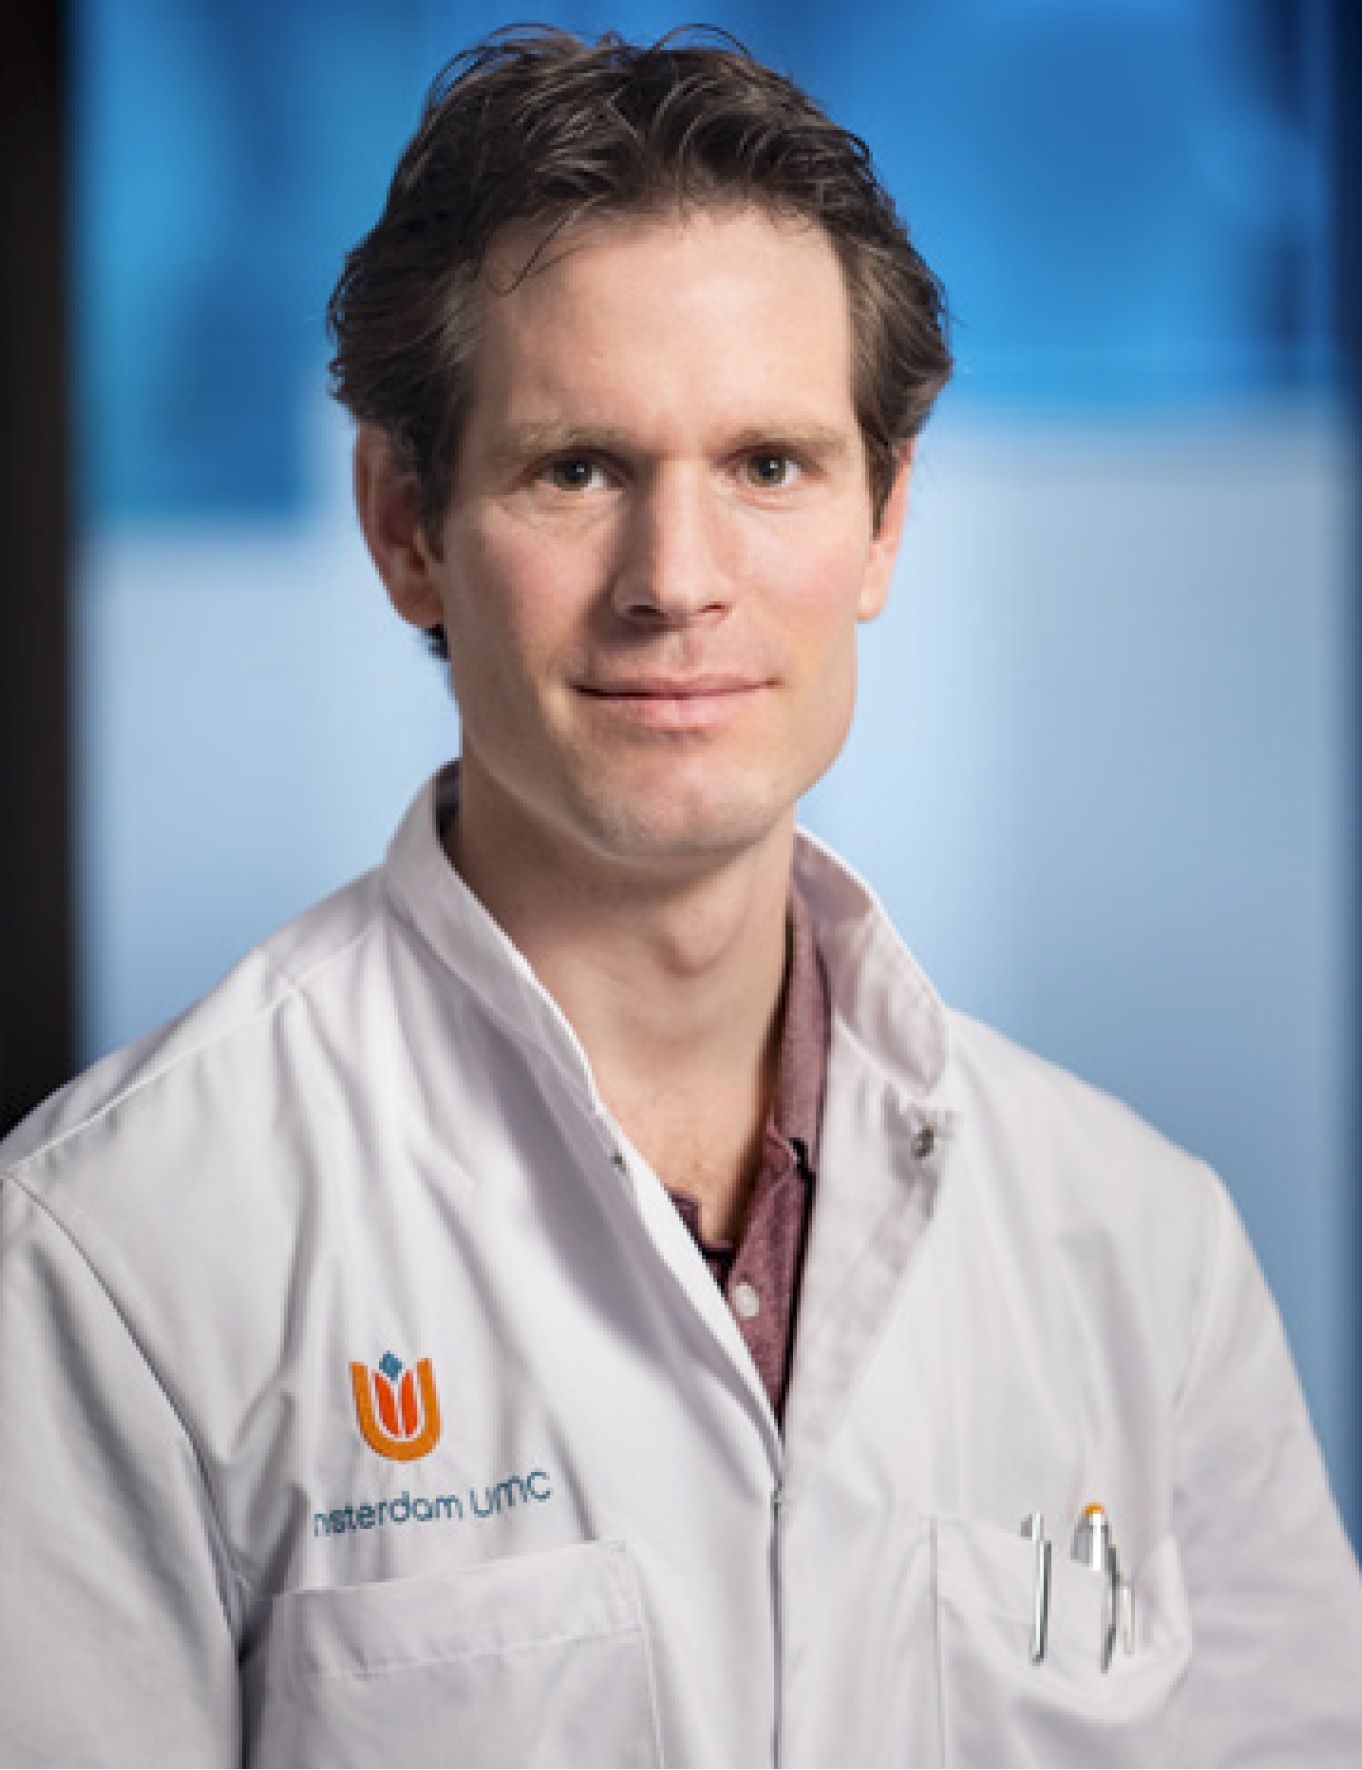 Researcher Nick van Es